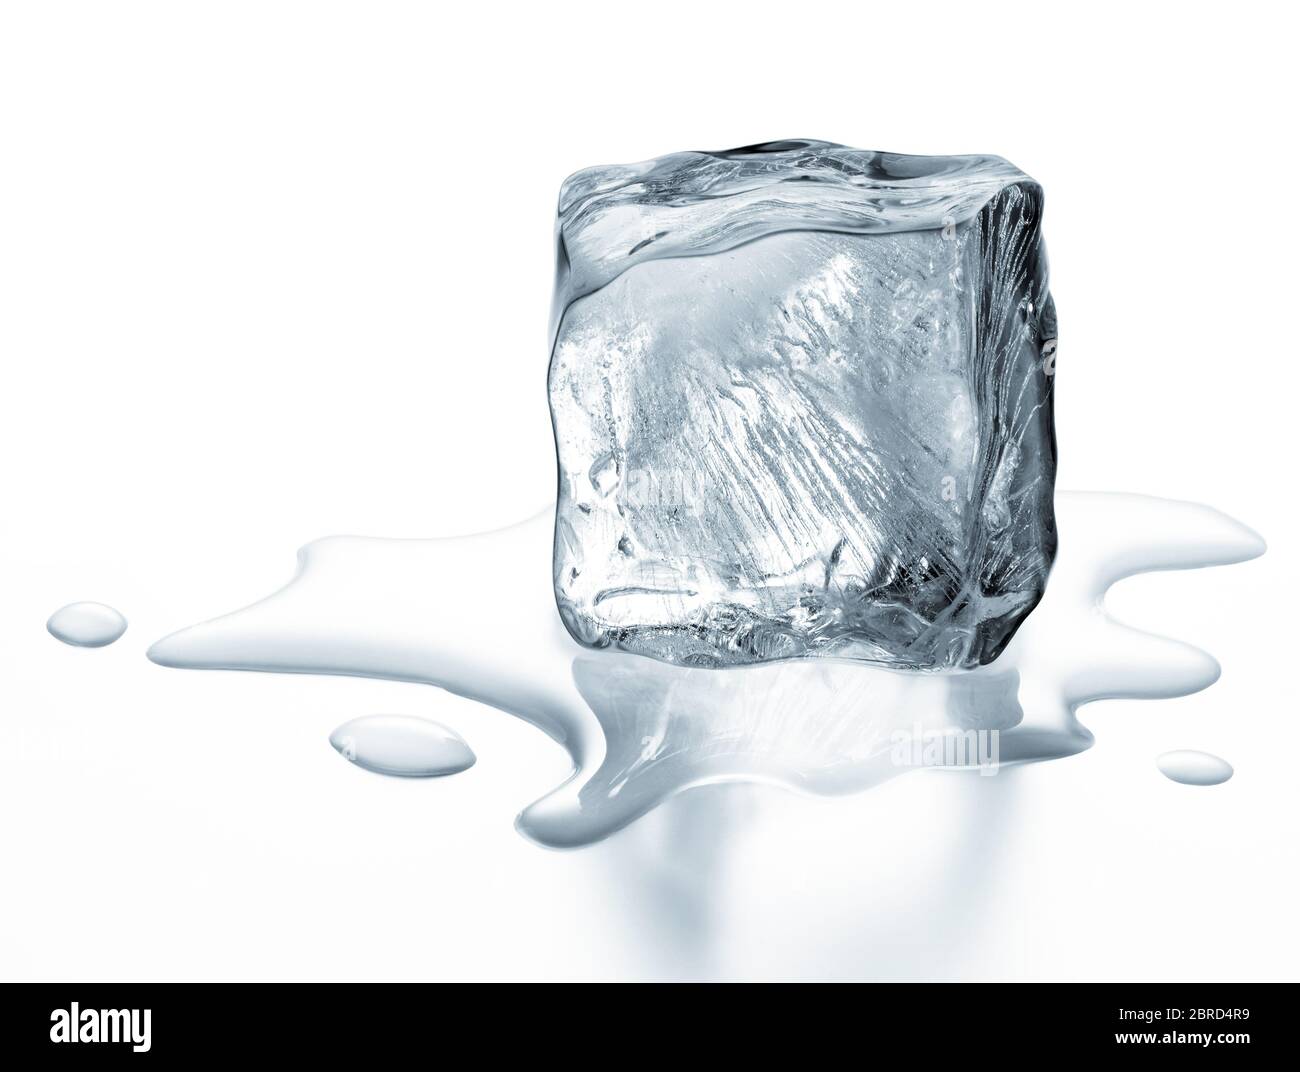 melting ice cube isolated on white background Stock Photo